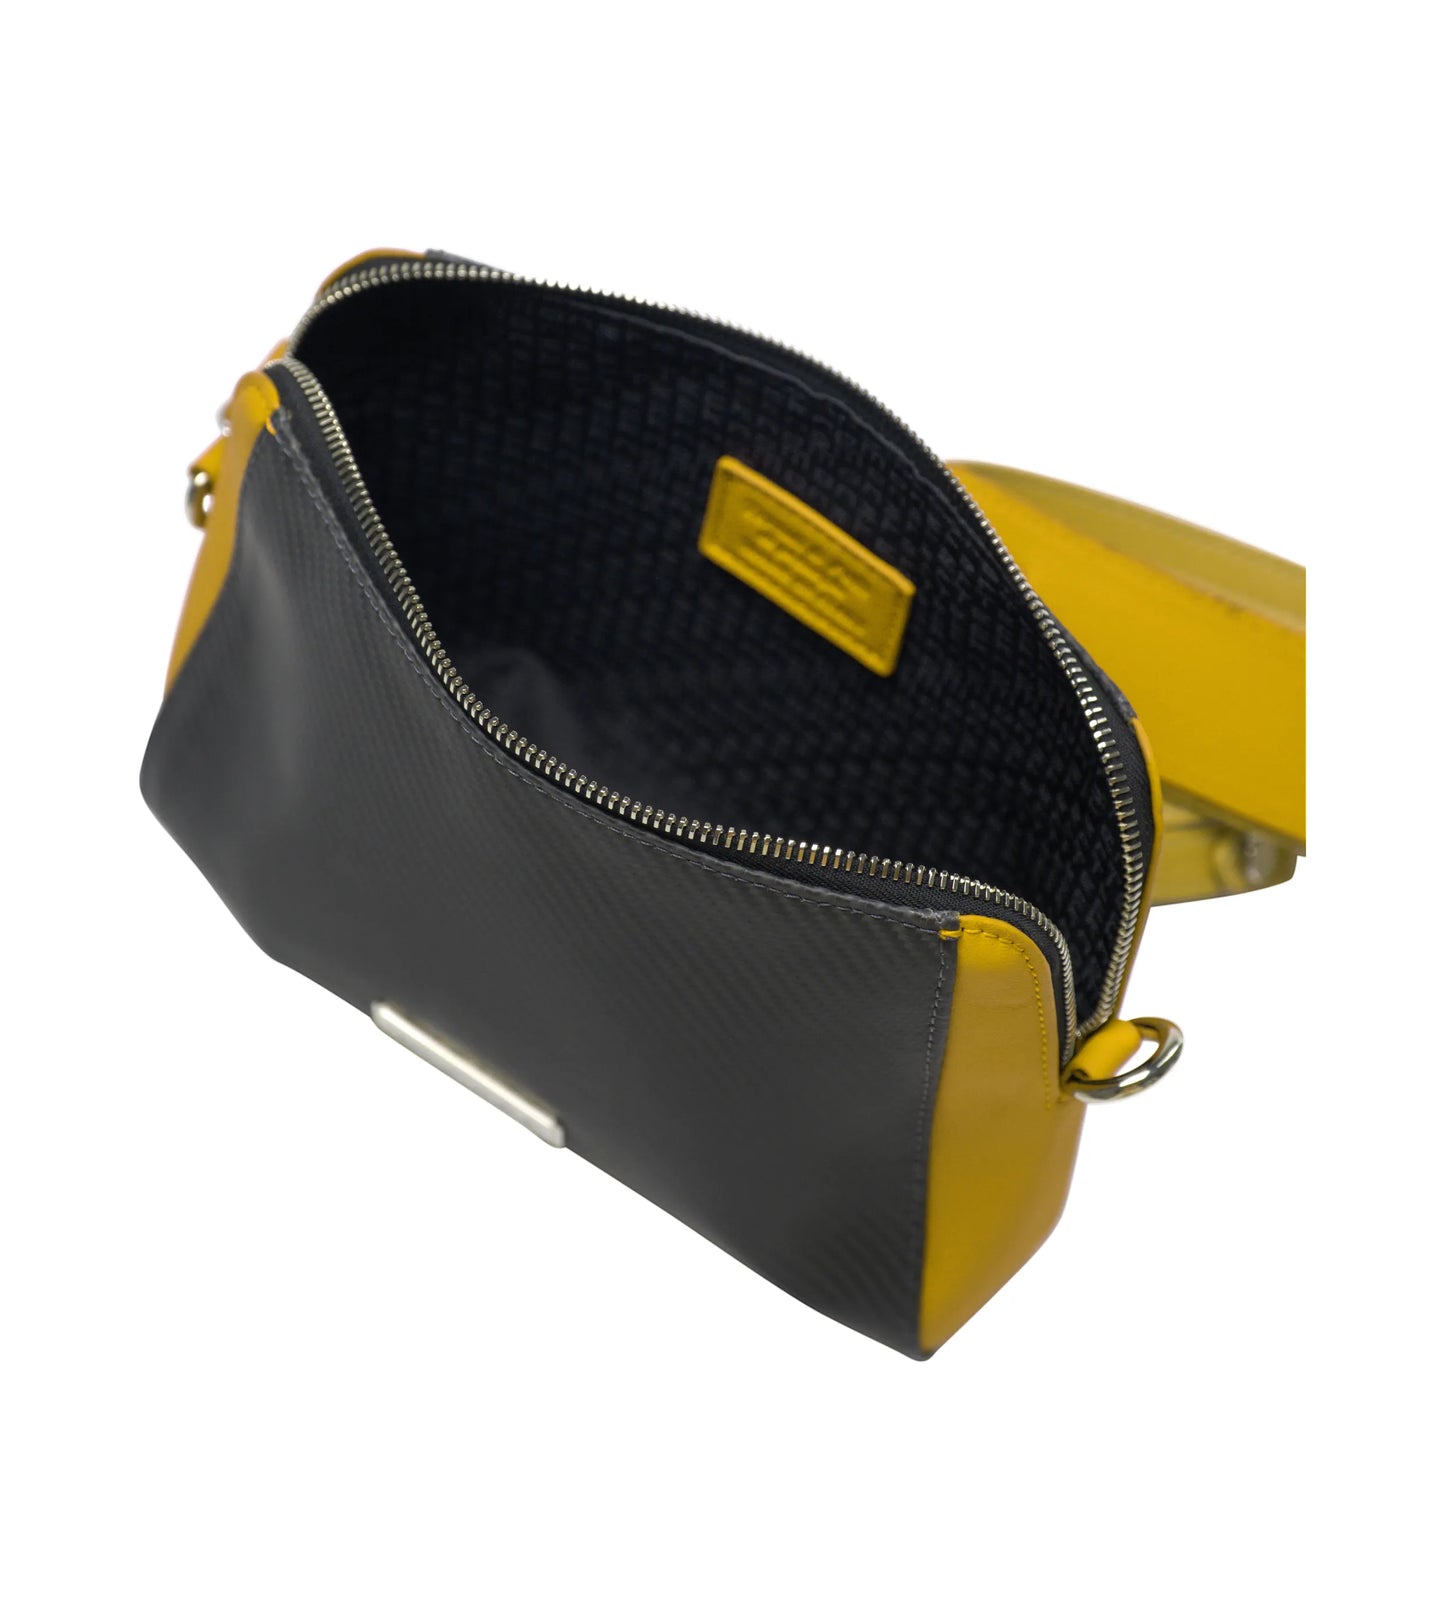 Amikka soft carbon fiber lady bag, Yellow